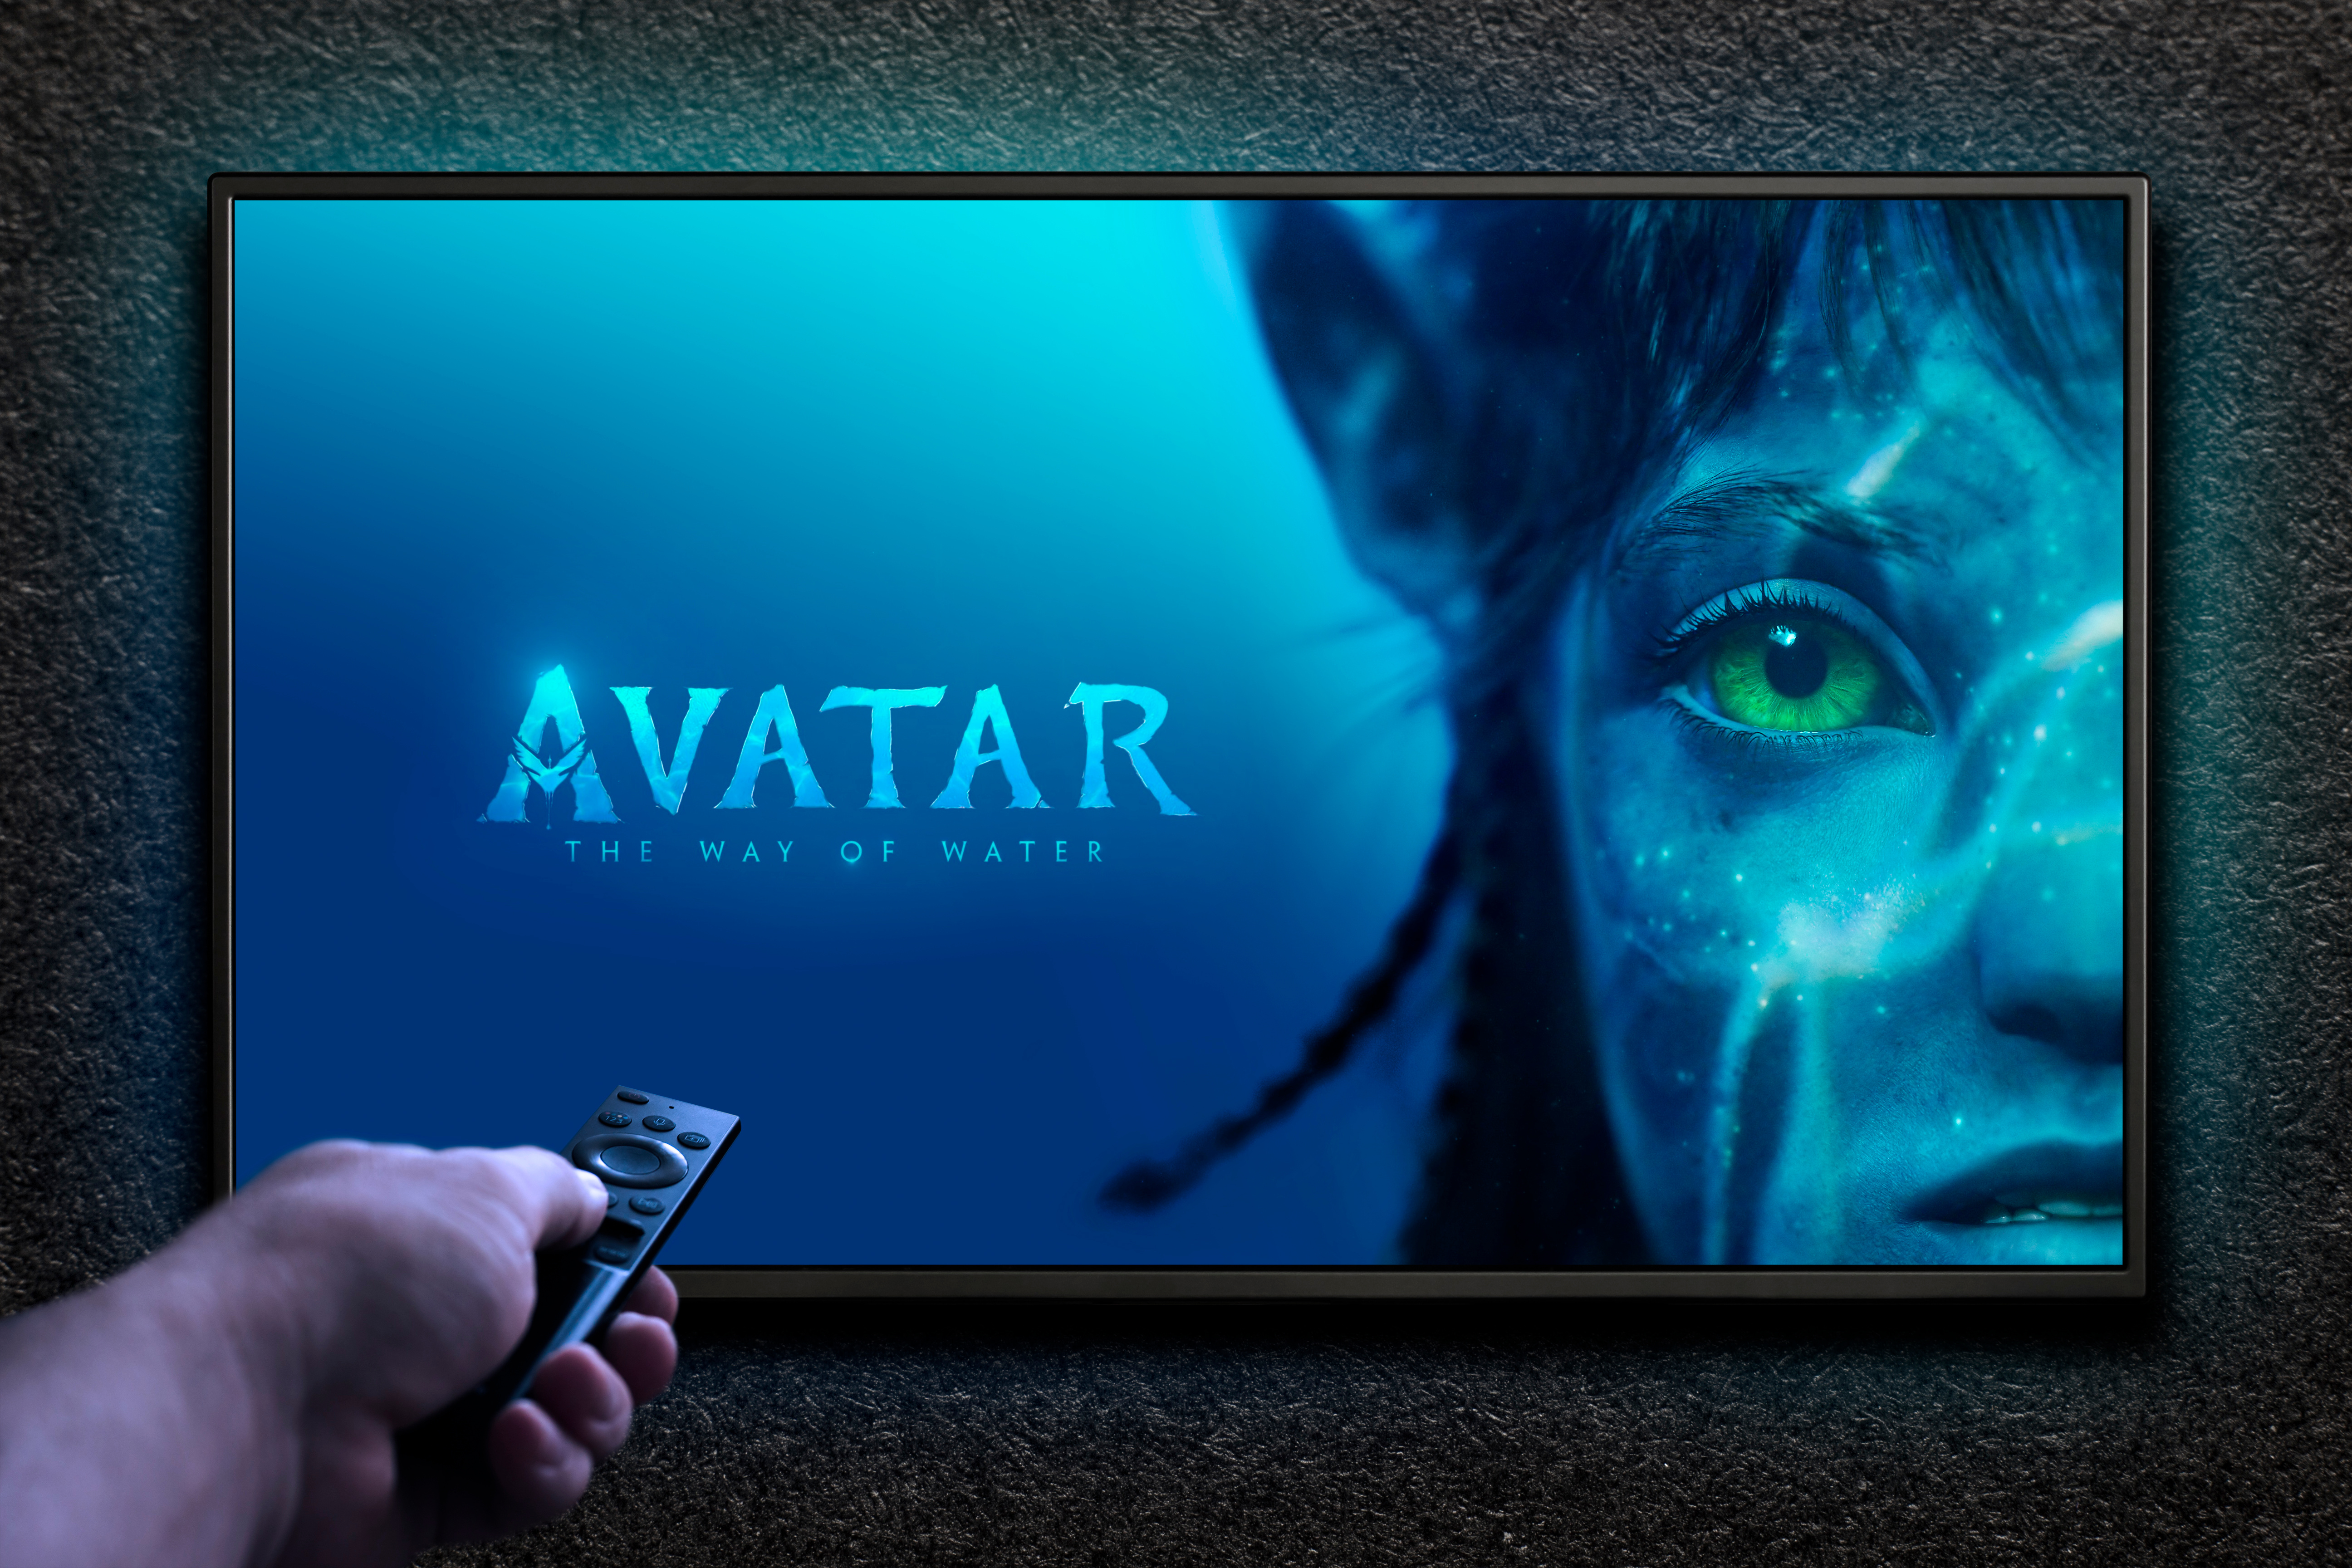 Le deuxième volet d'Avatar met l'accent sur la biologie marine, plutôt que terrestre. © hamara, Adobe Stock